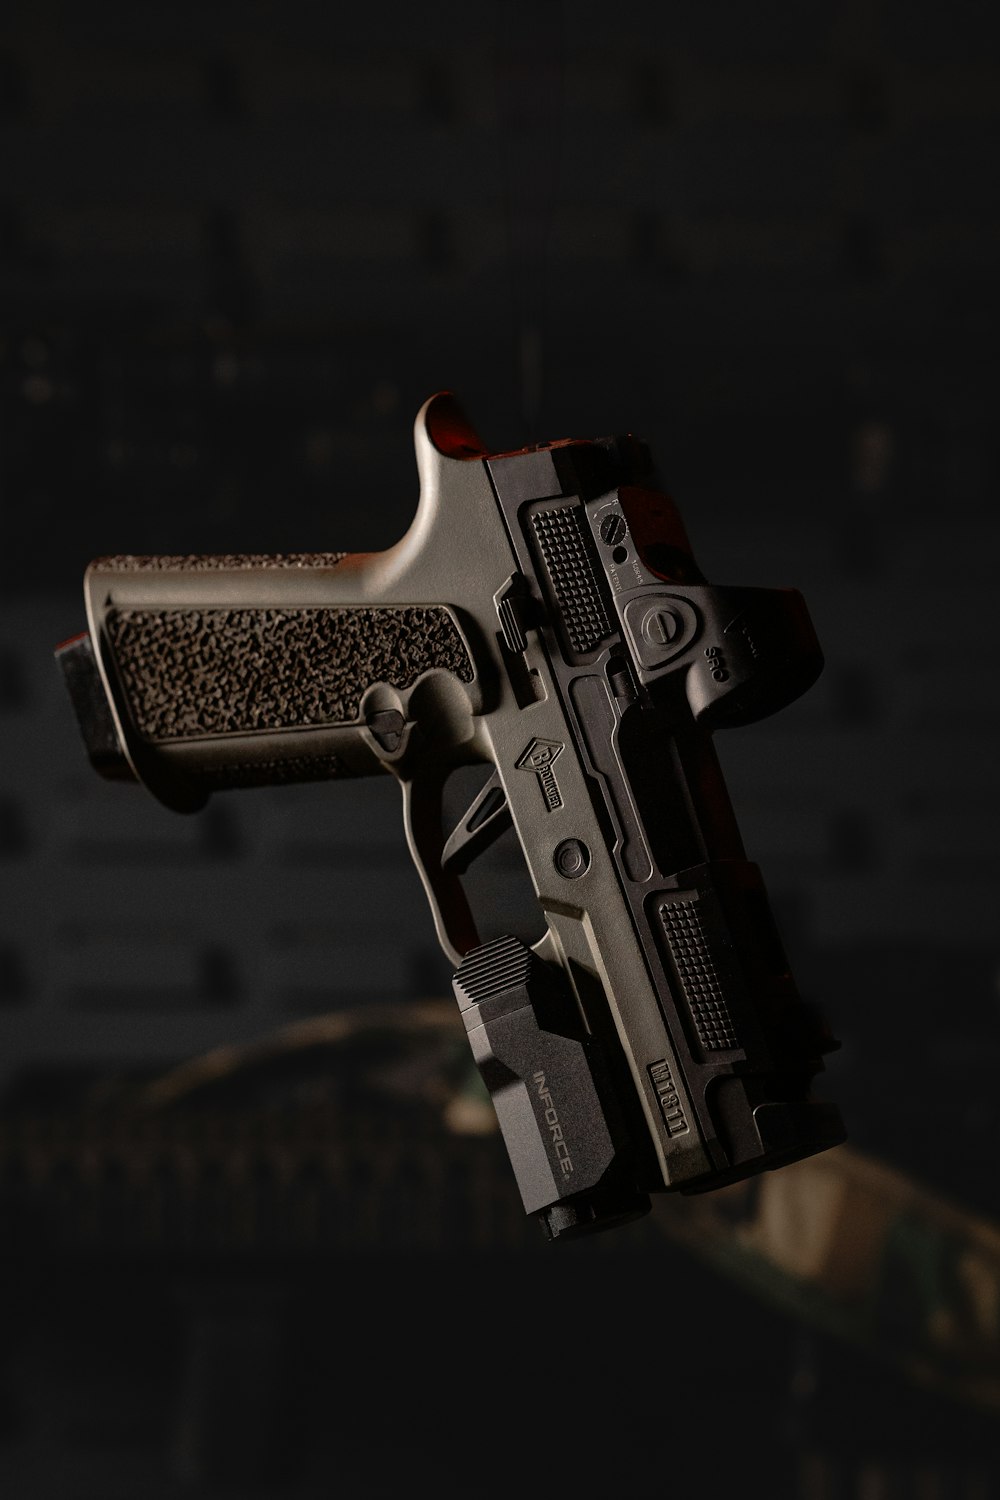 a close up of a gun in the dark